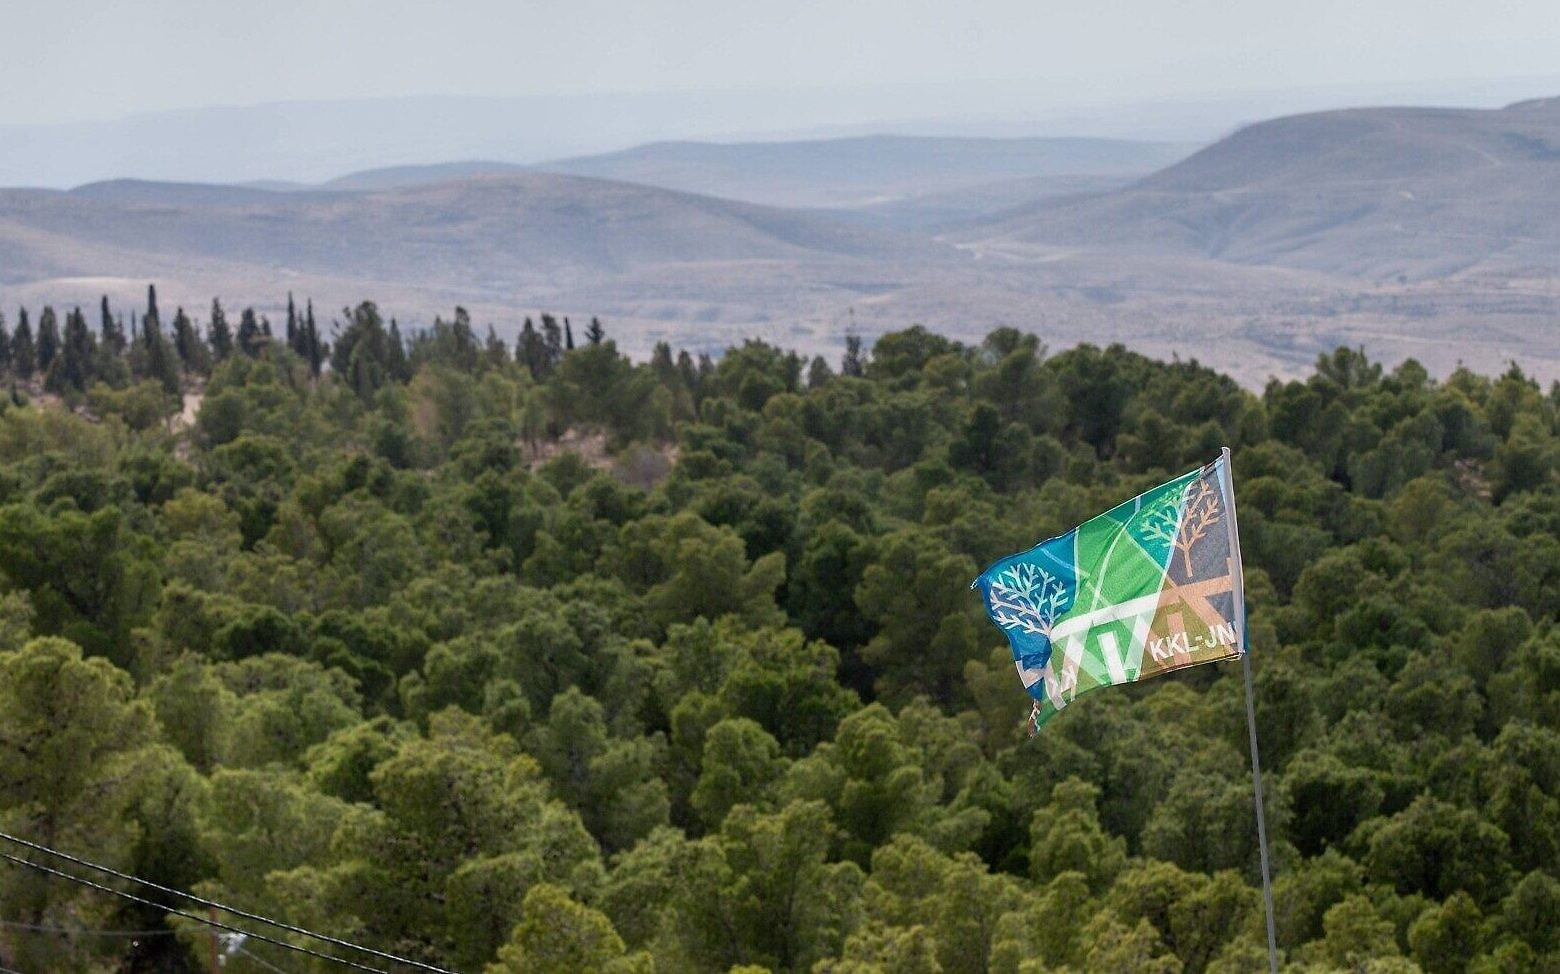 La forêt de Yatir du KKL-JNF dans le sud d'Israël. (Crédit : Alex Kolomoisky)